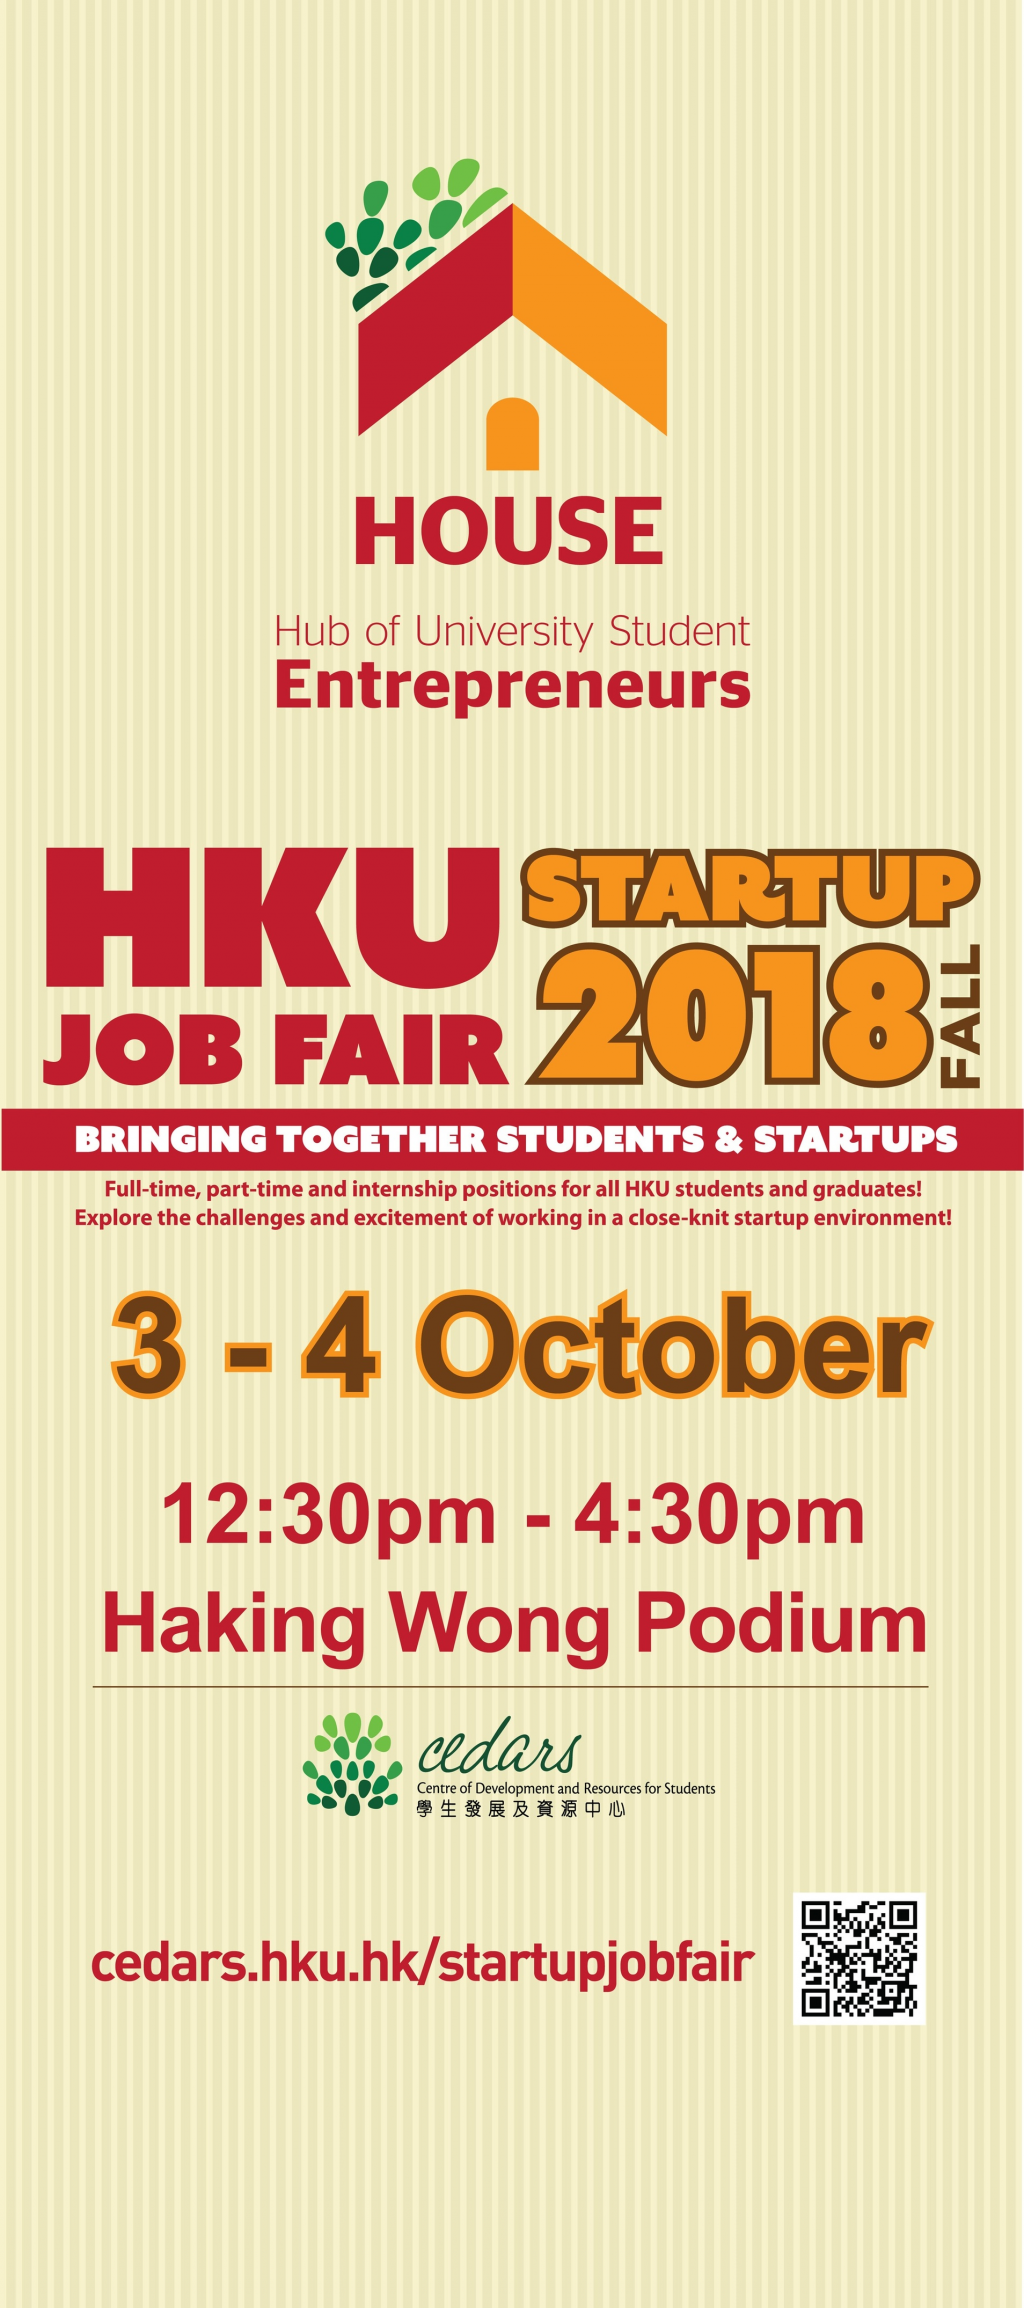 HKU Startup Job Fair 2018 Fall